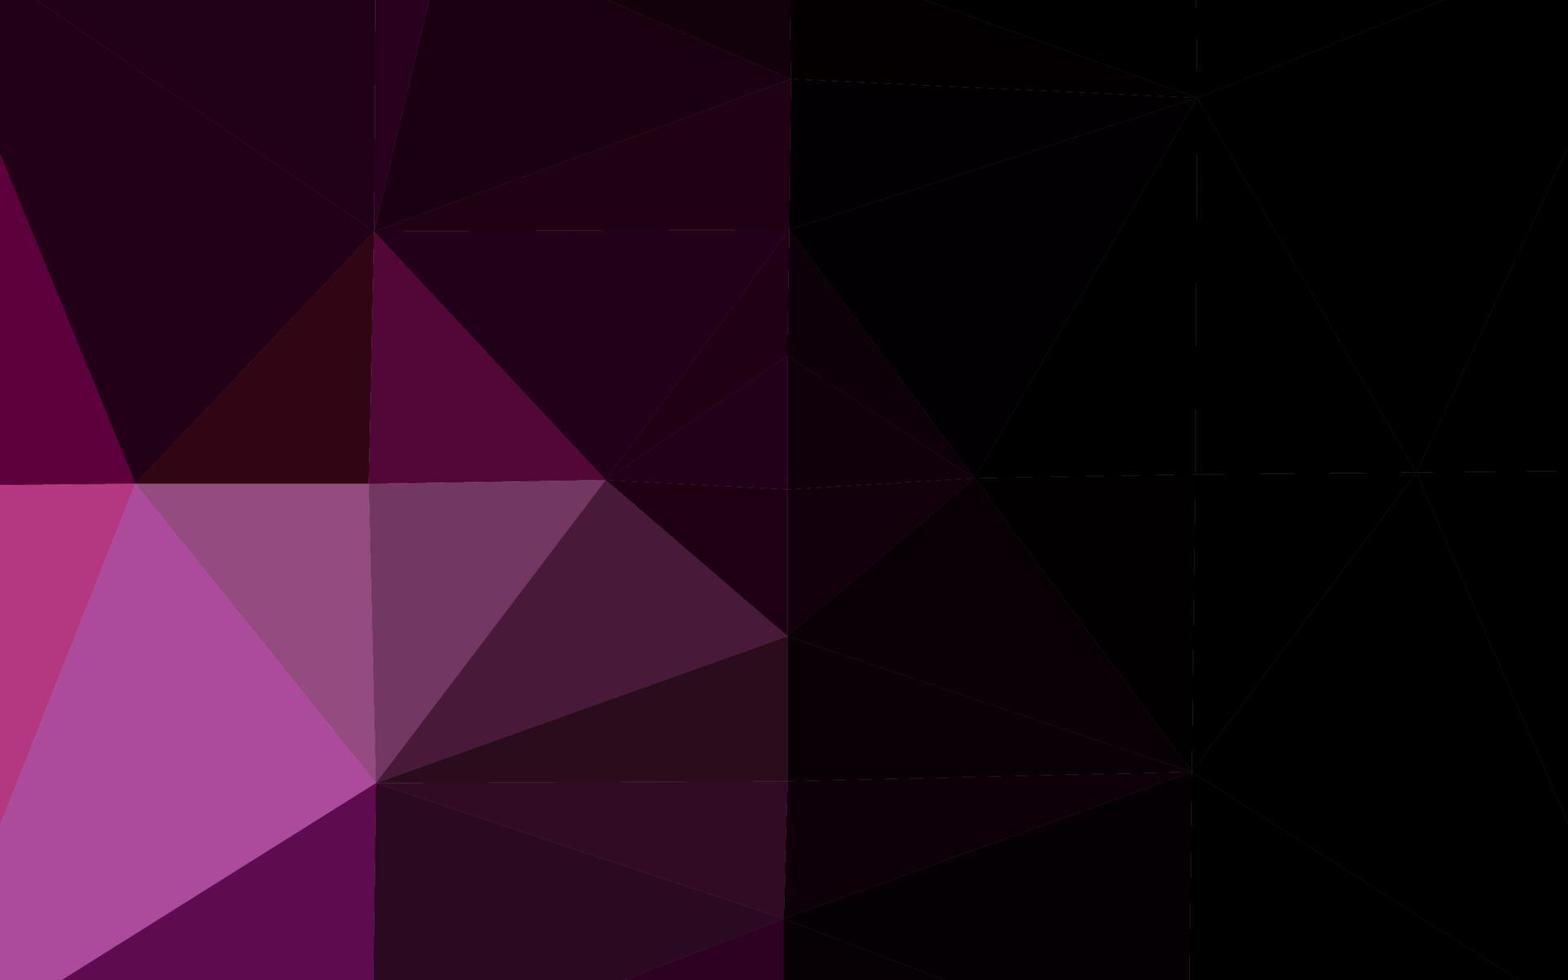 couverture polygonale abstraite de vecteur violet foncé.